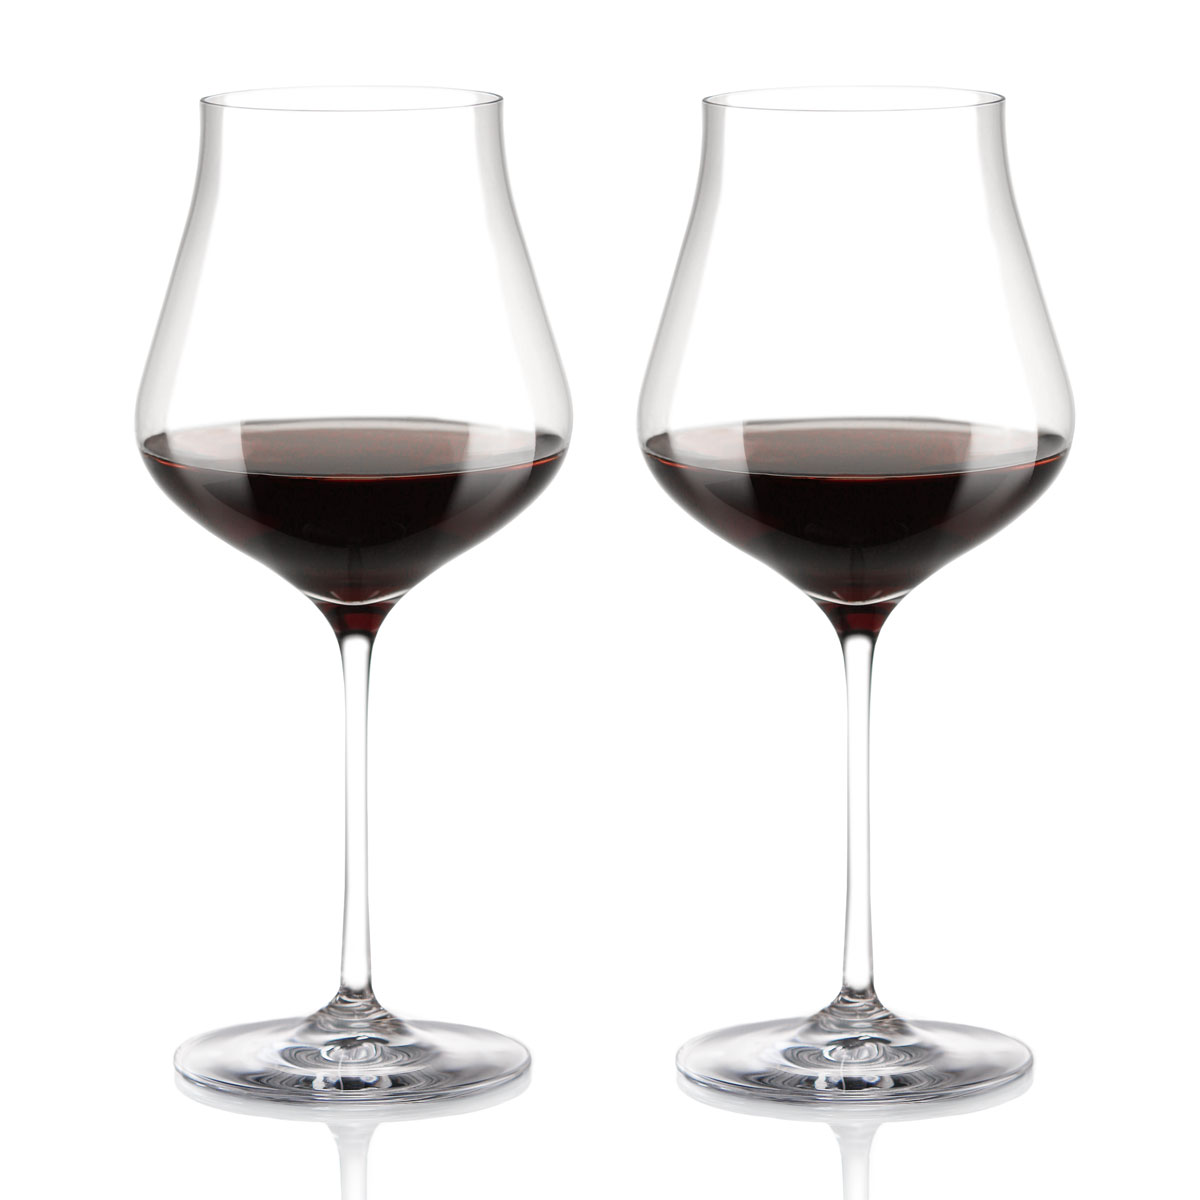 Cashs Ireland Grand Cru Pinot Noir Wine Glasses, Pair